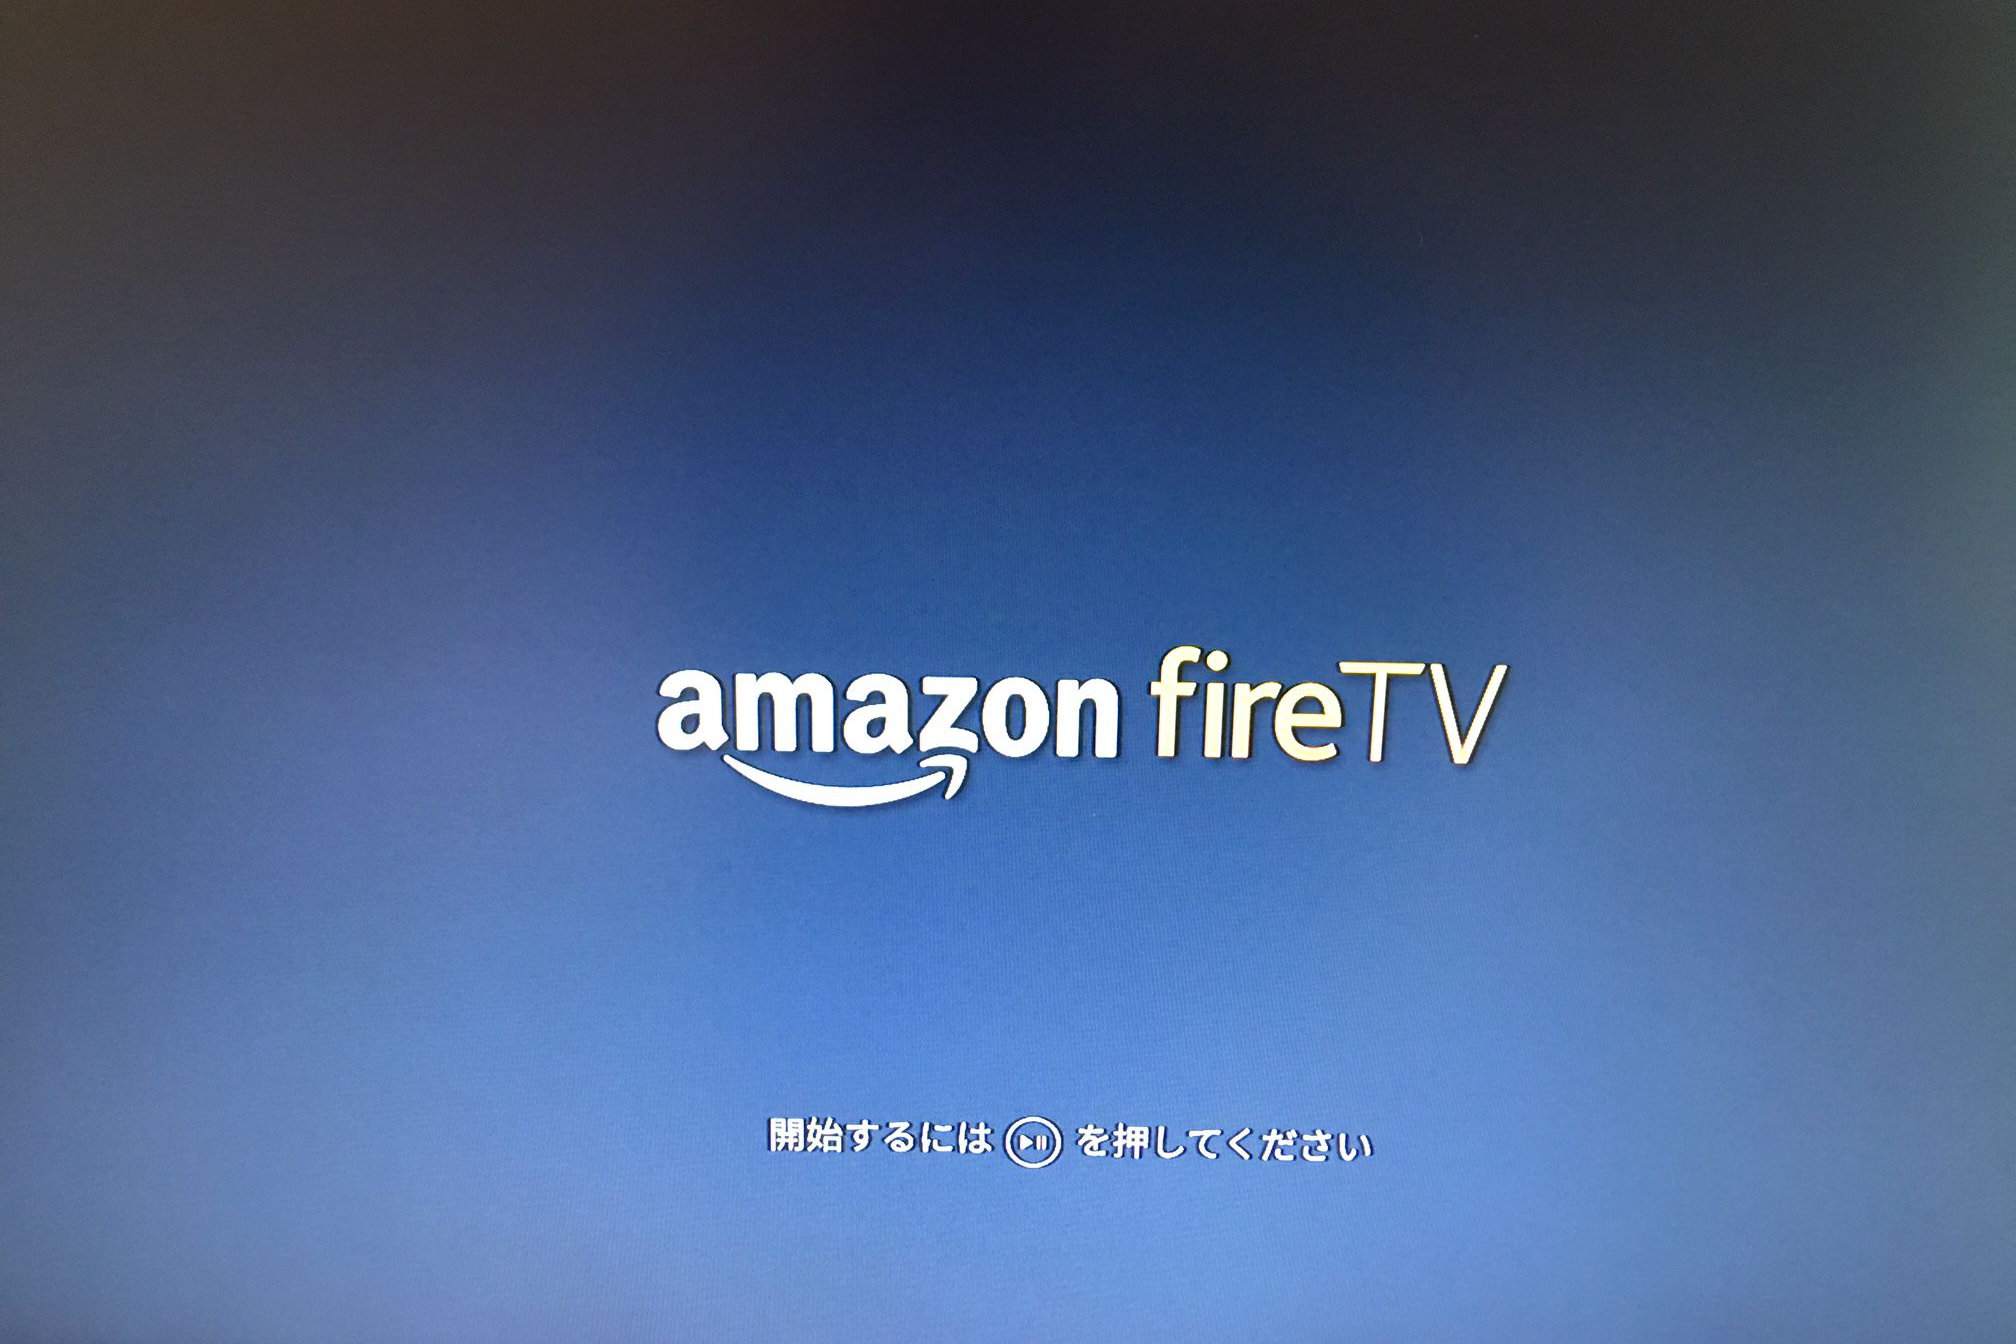 Een afbeelding van een televisie waarop Amazon Fire TV wordt geïnitialiseerd.